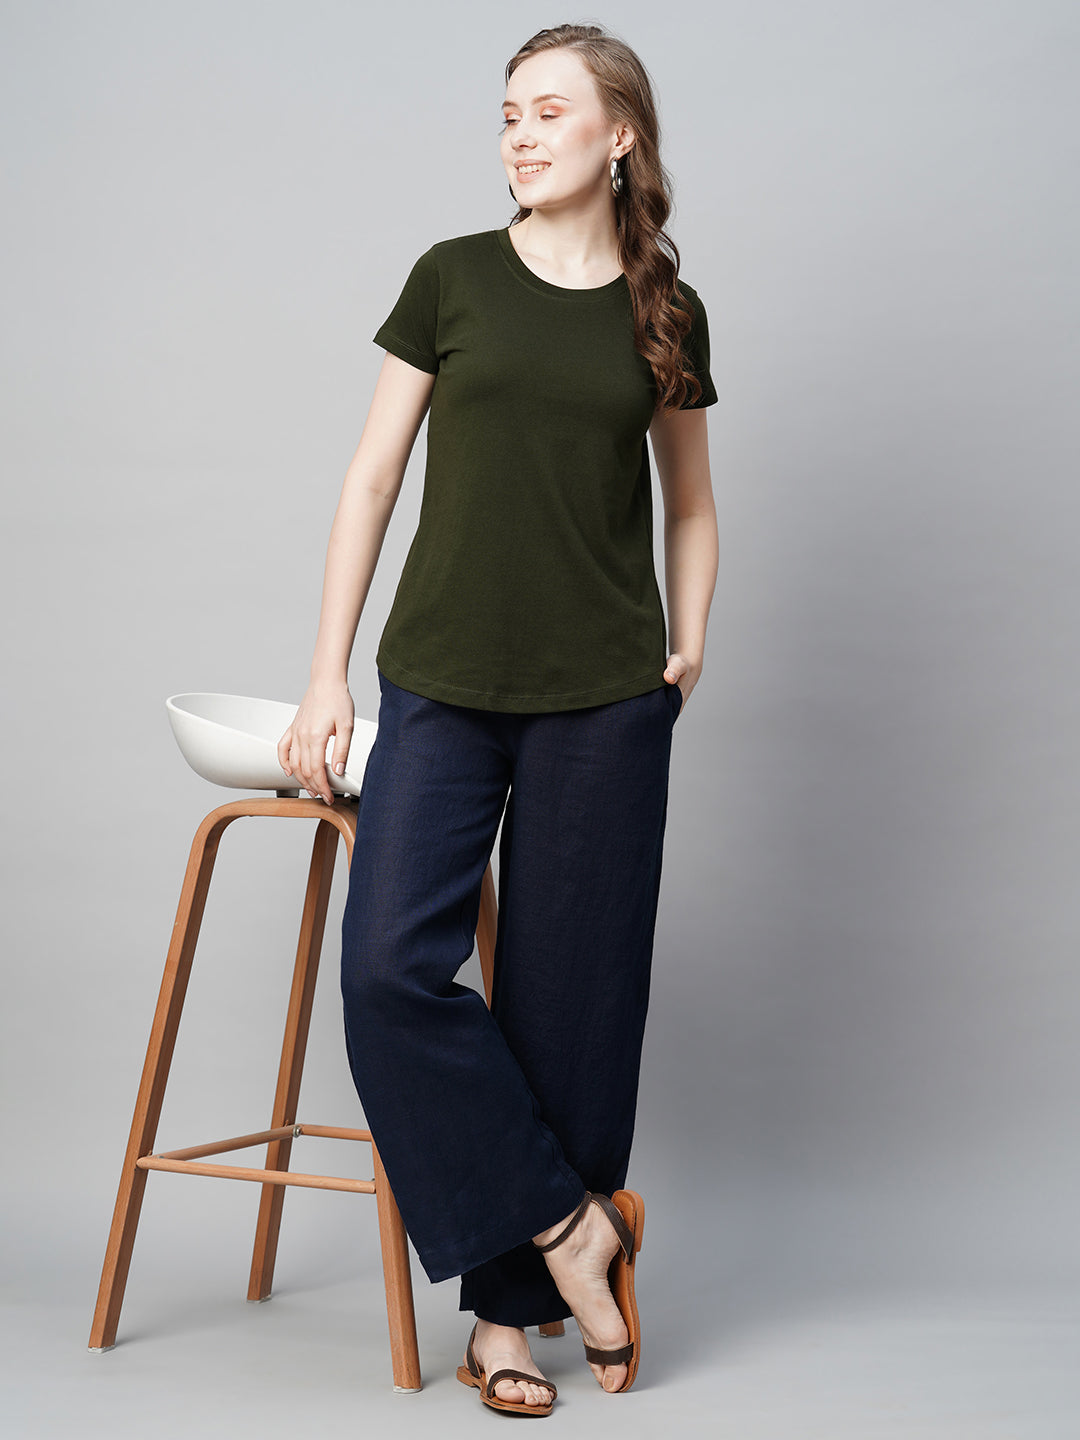 Women's Cotton Darkgreen Regular Fit Tshirt